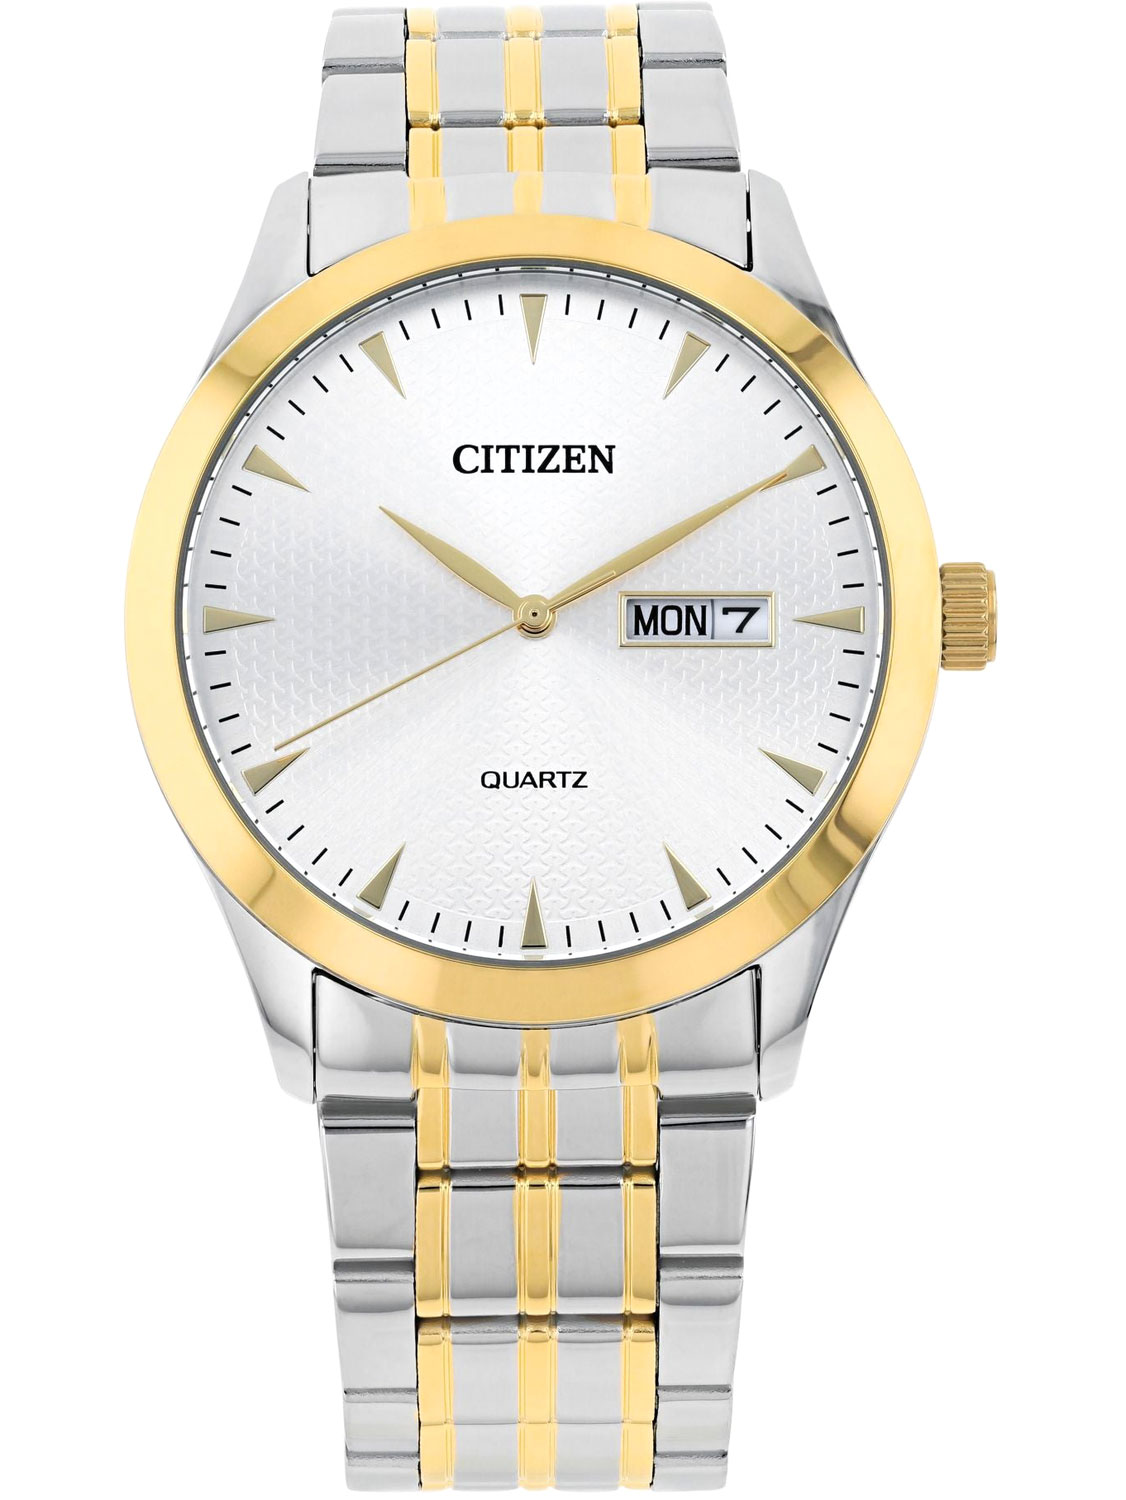    Citizen DZ5014-53A